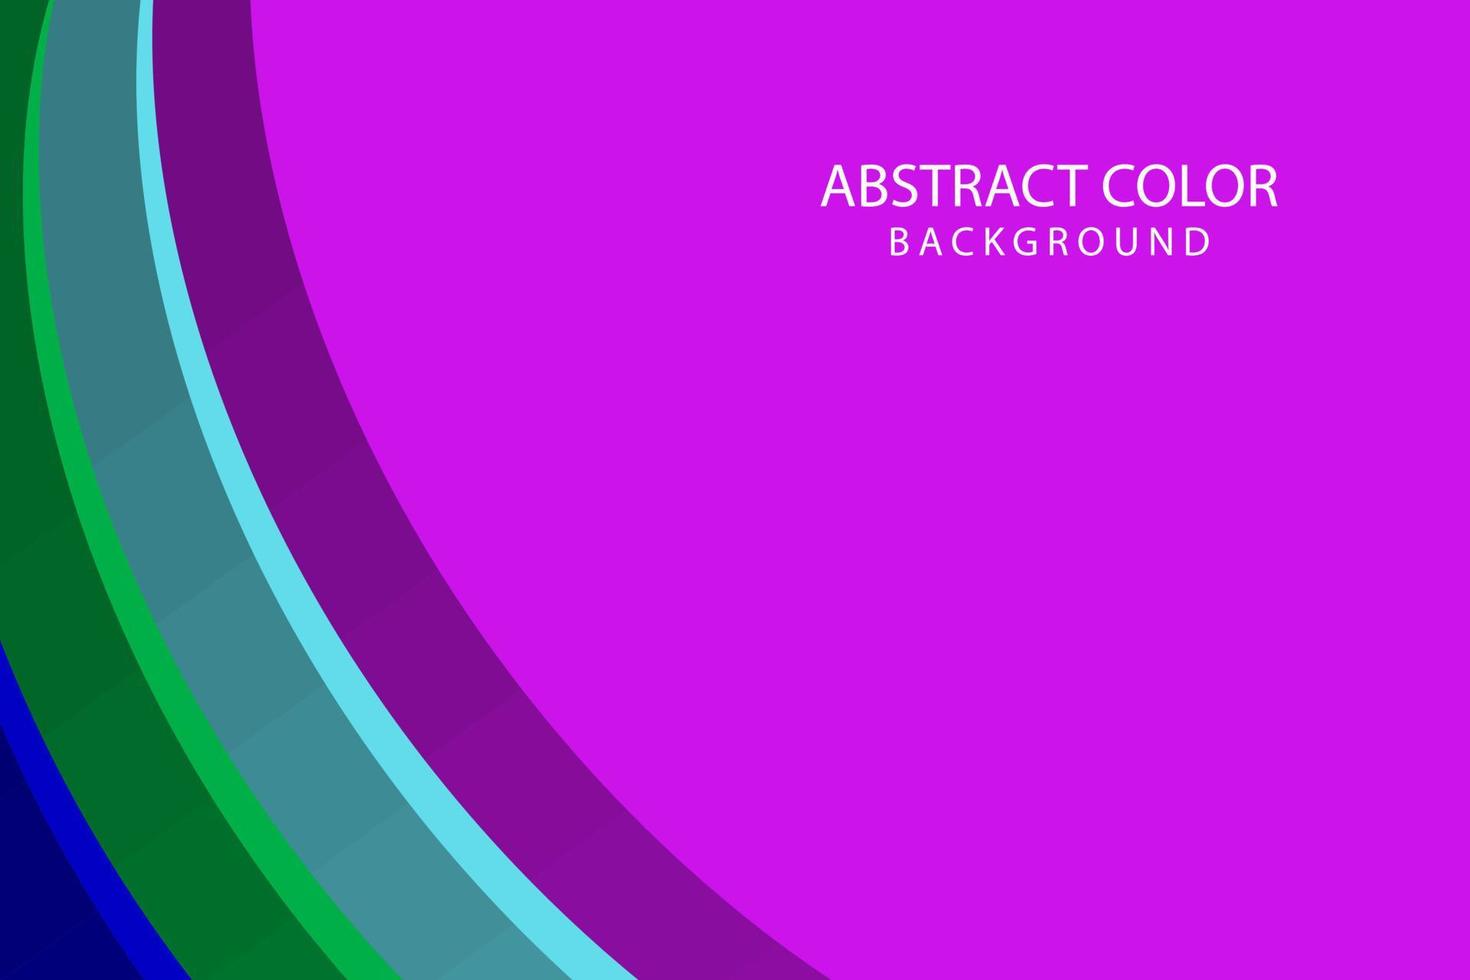 abstrakt färgbakgrund, vektorillustrationskoncept för sociala medier banners och inlägg, affärspresentation och rapportmallar, marknadsföringsmaterial, tryckdesign. vektor